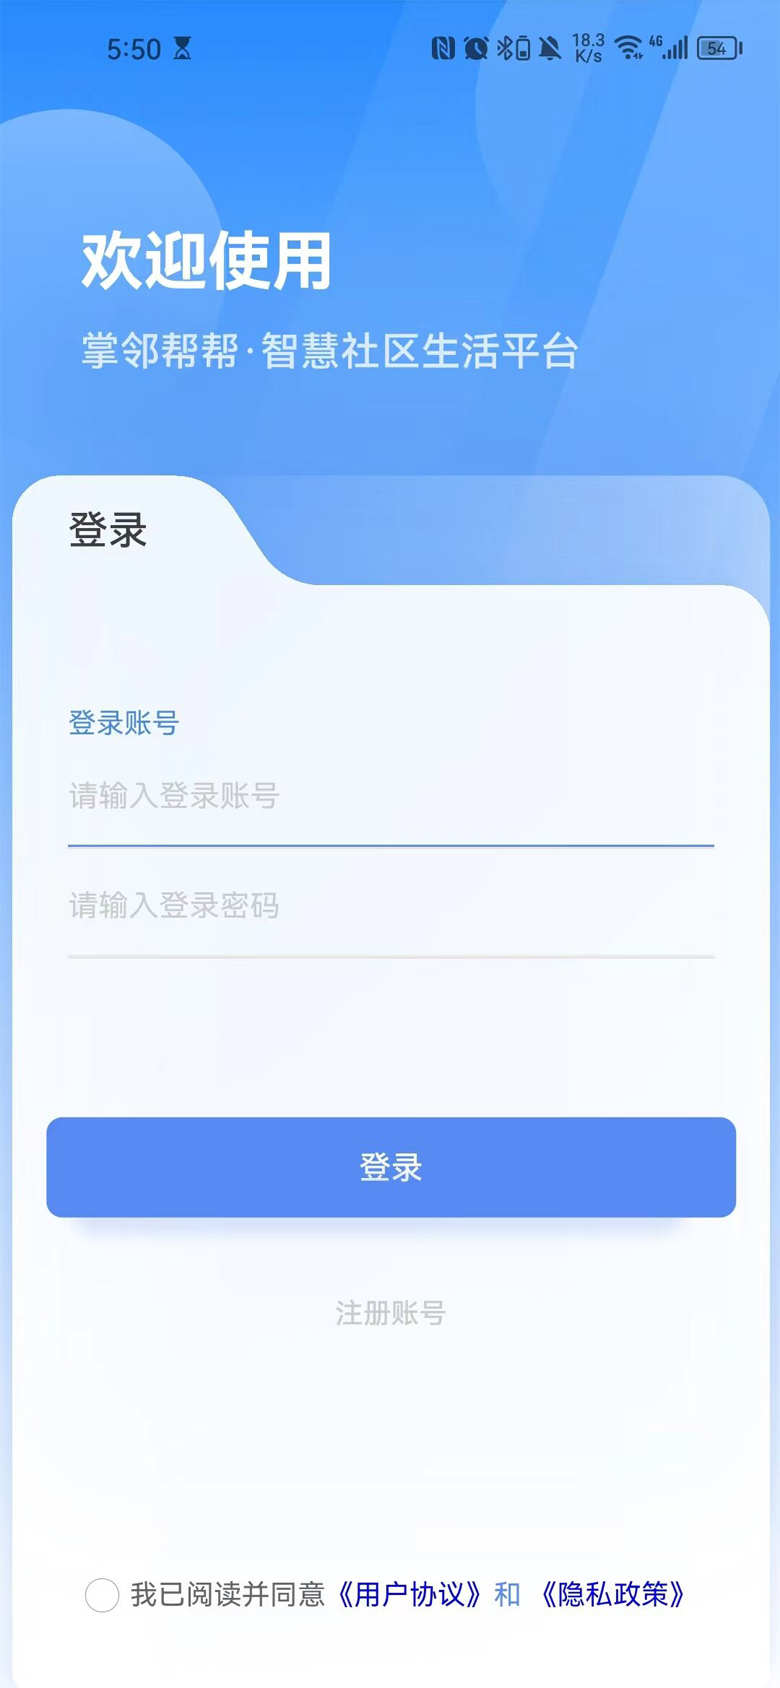 掌邻帮帮智慧社区生活平台app官方版3